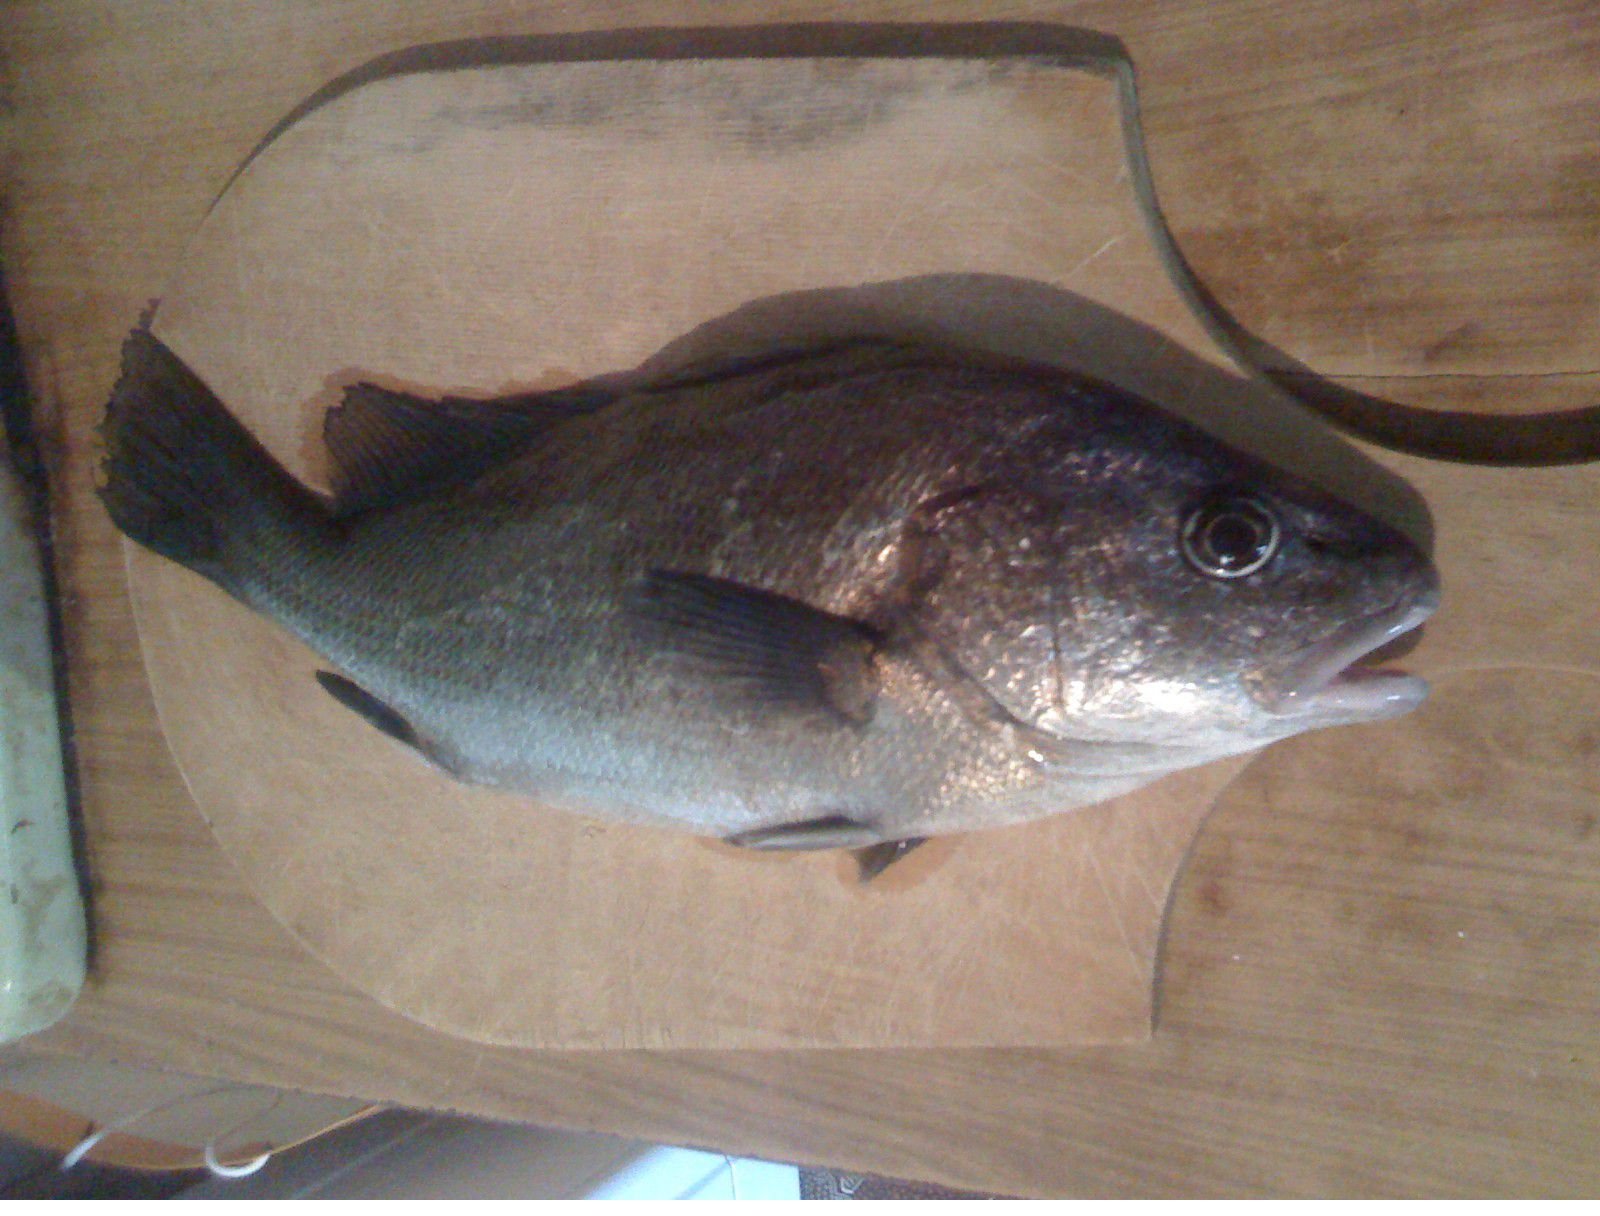 Албула фото и описание – каталог рыб, смотреть онлайн